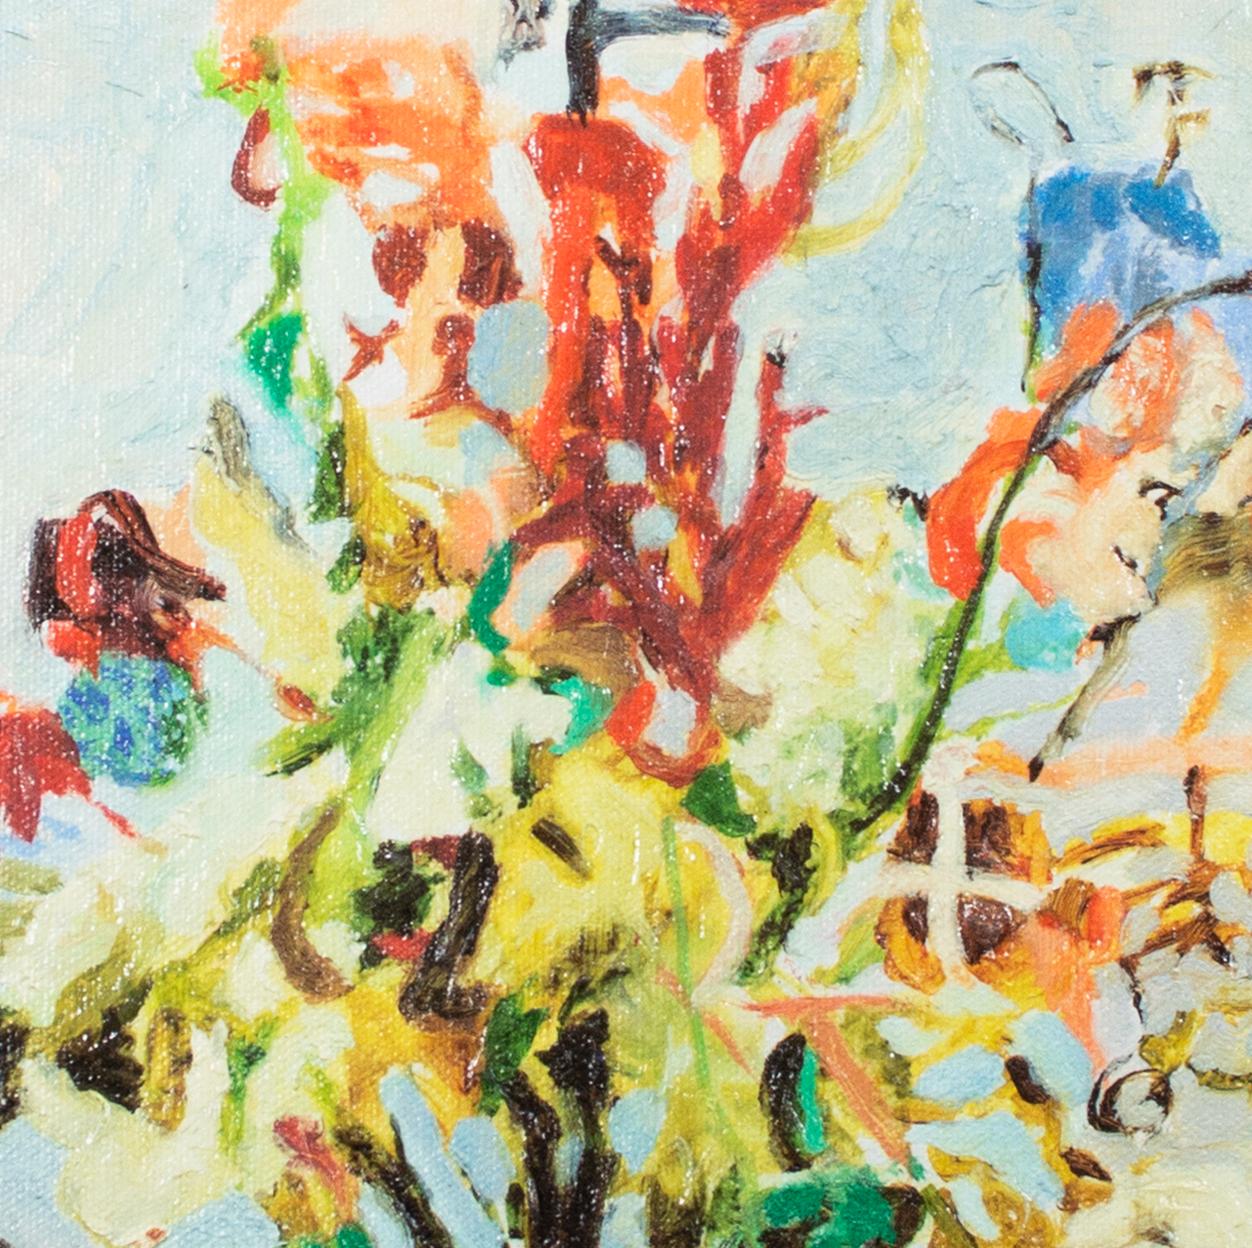 Dieser Gicléedruck auf Leinwand ist mit Acrylgel-Pinselstrichen nach dem Original-Ölgemälde von 2001 von Hand verschönert. Dieses schöne Kunstwerk, das bunte Blumen in einer Vase zeigt, strahlt den Frühling und den Muttertag aus. Mit einem Preis von